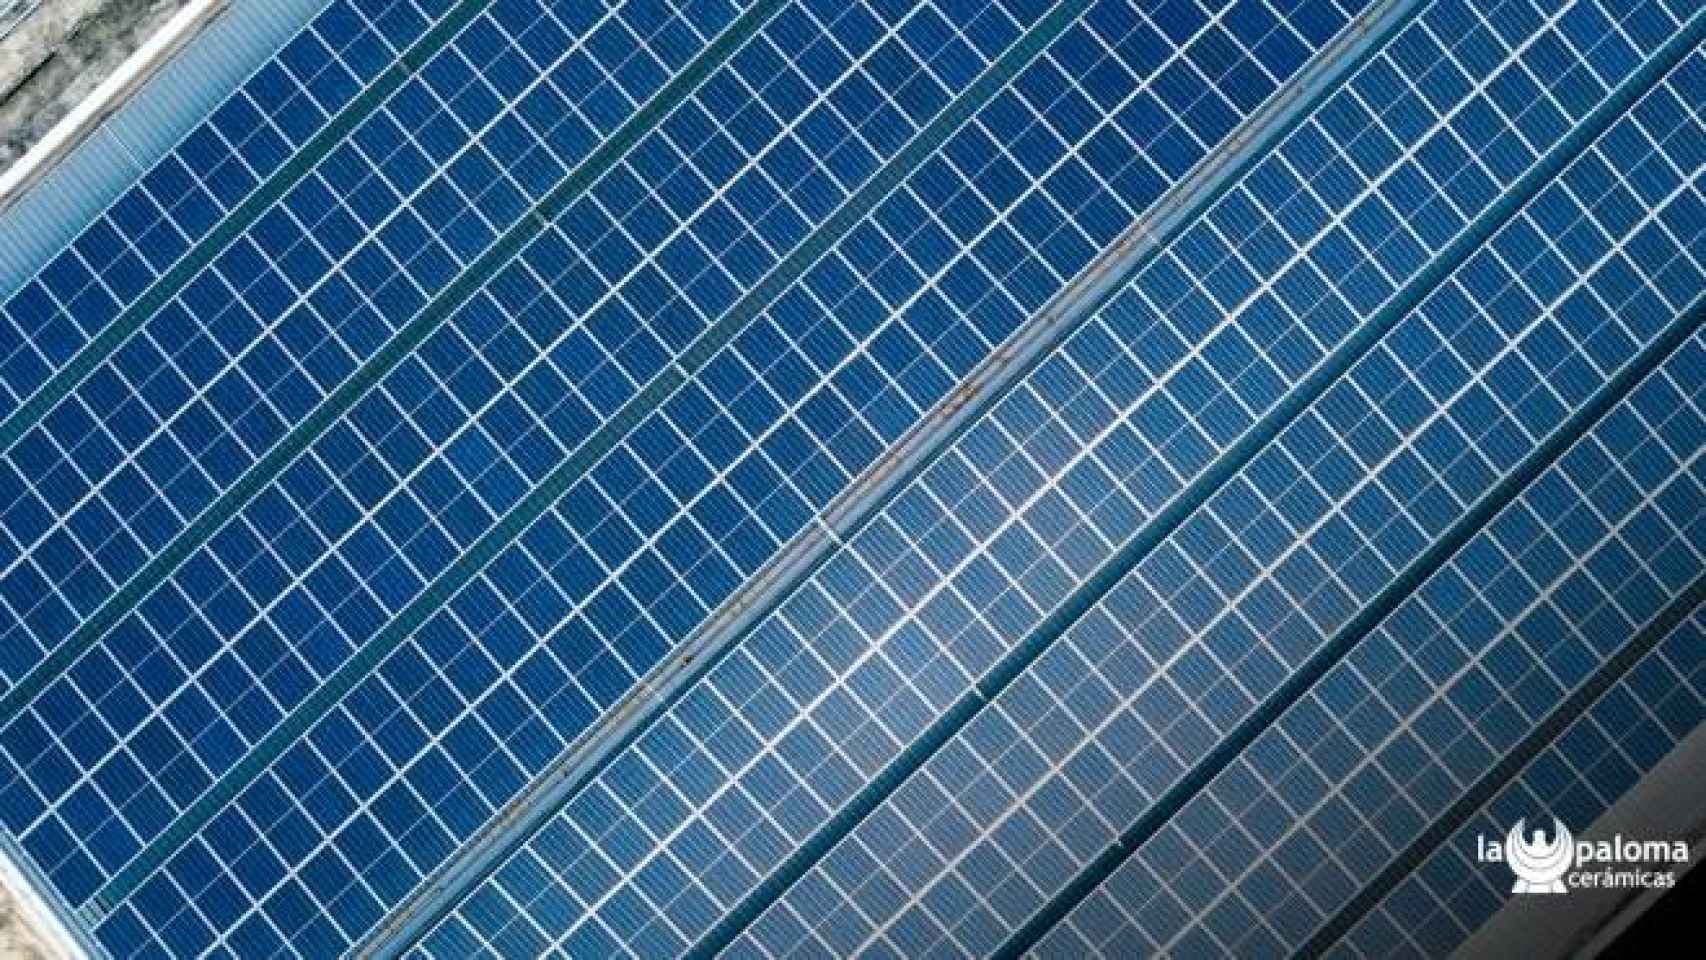 La Paloma Cerámicas ha adoptado un sistema fotovoltaico que evitará la emisión de 3.800 toneladas anuales de CO2 al medio ambiente